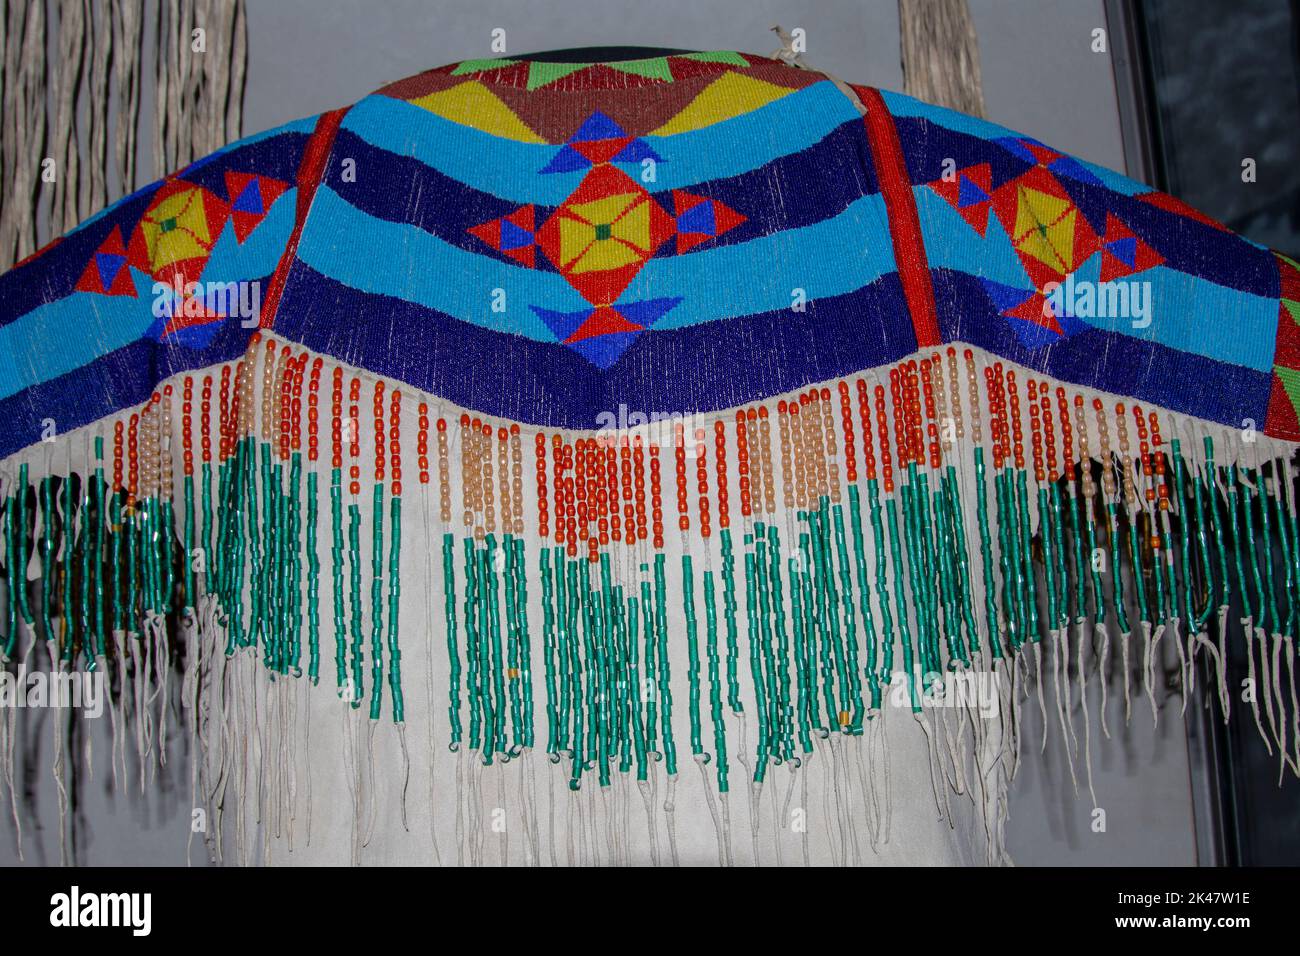 Robe de la tribu Shoshone-Bannock, Idaho vers 1895, faite de peaux tannées, de perles de verre, d'herbe et de coquillages de cowrie. Banque D'Images